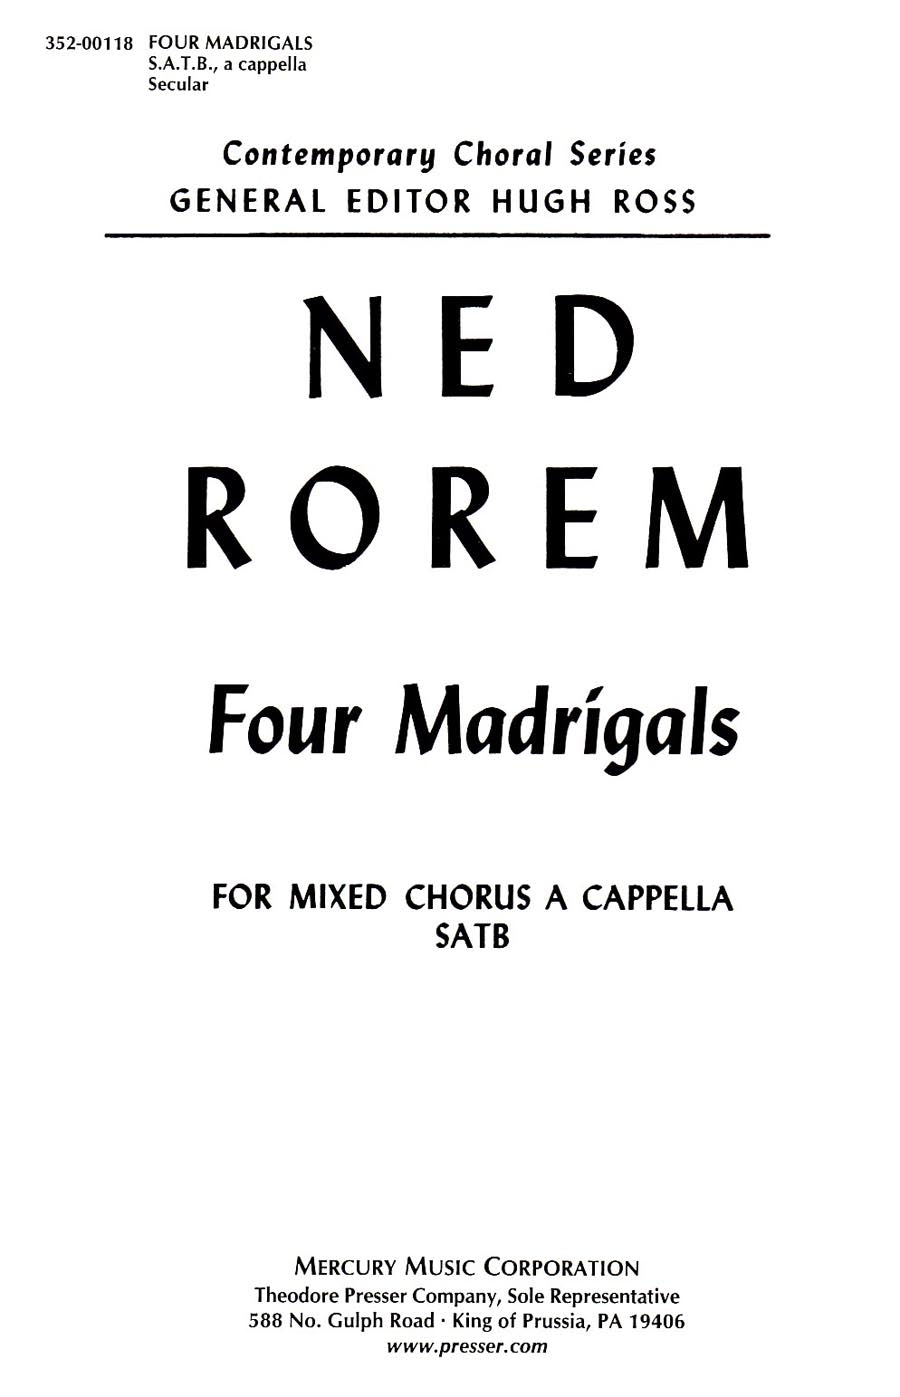 Rorem: Four Madrigals